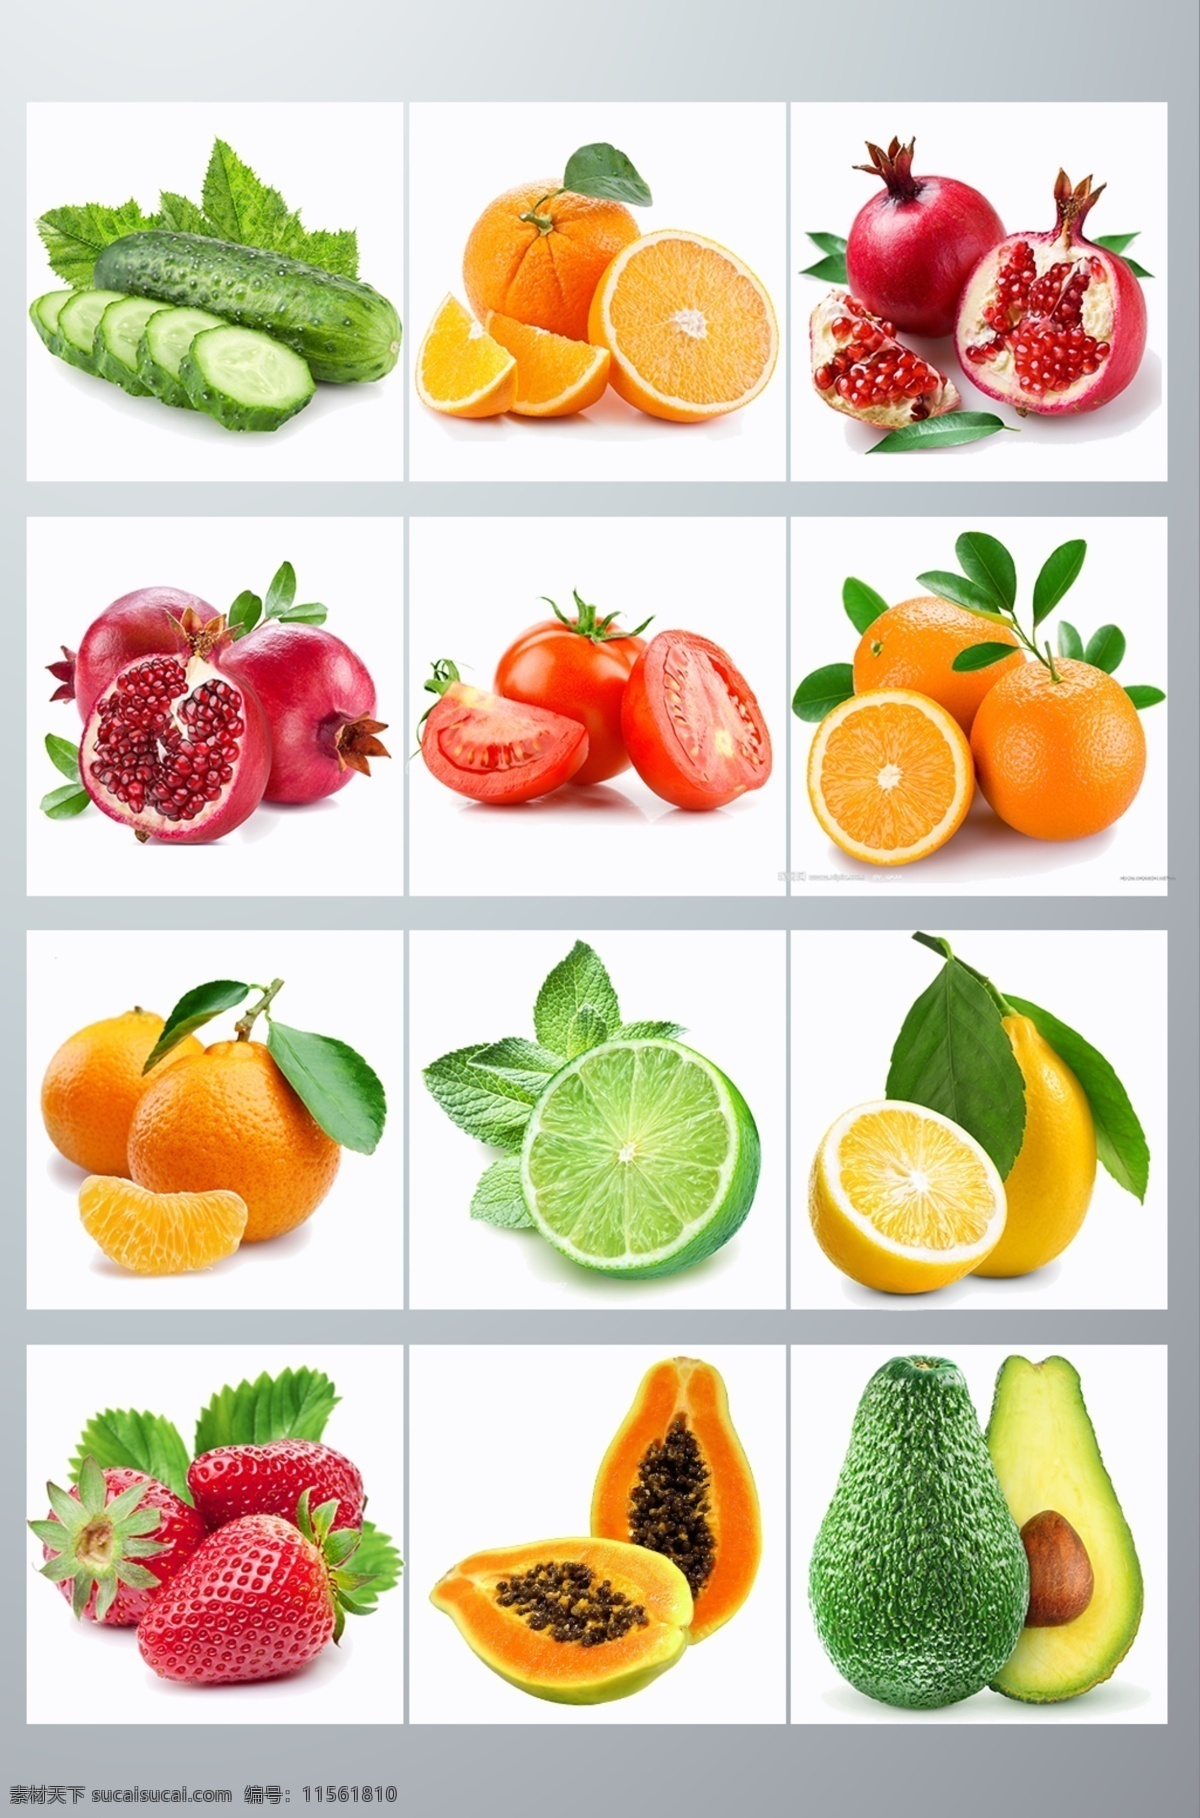 蔬菜水果 拼盘 组合 植物 淘宝 蔬菜 水果 淘宝素材 淘宝界面设计